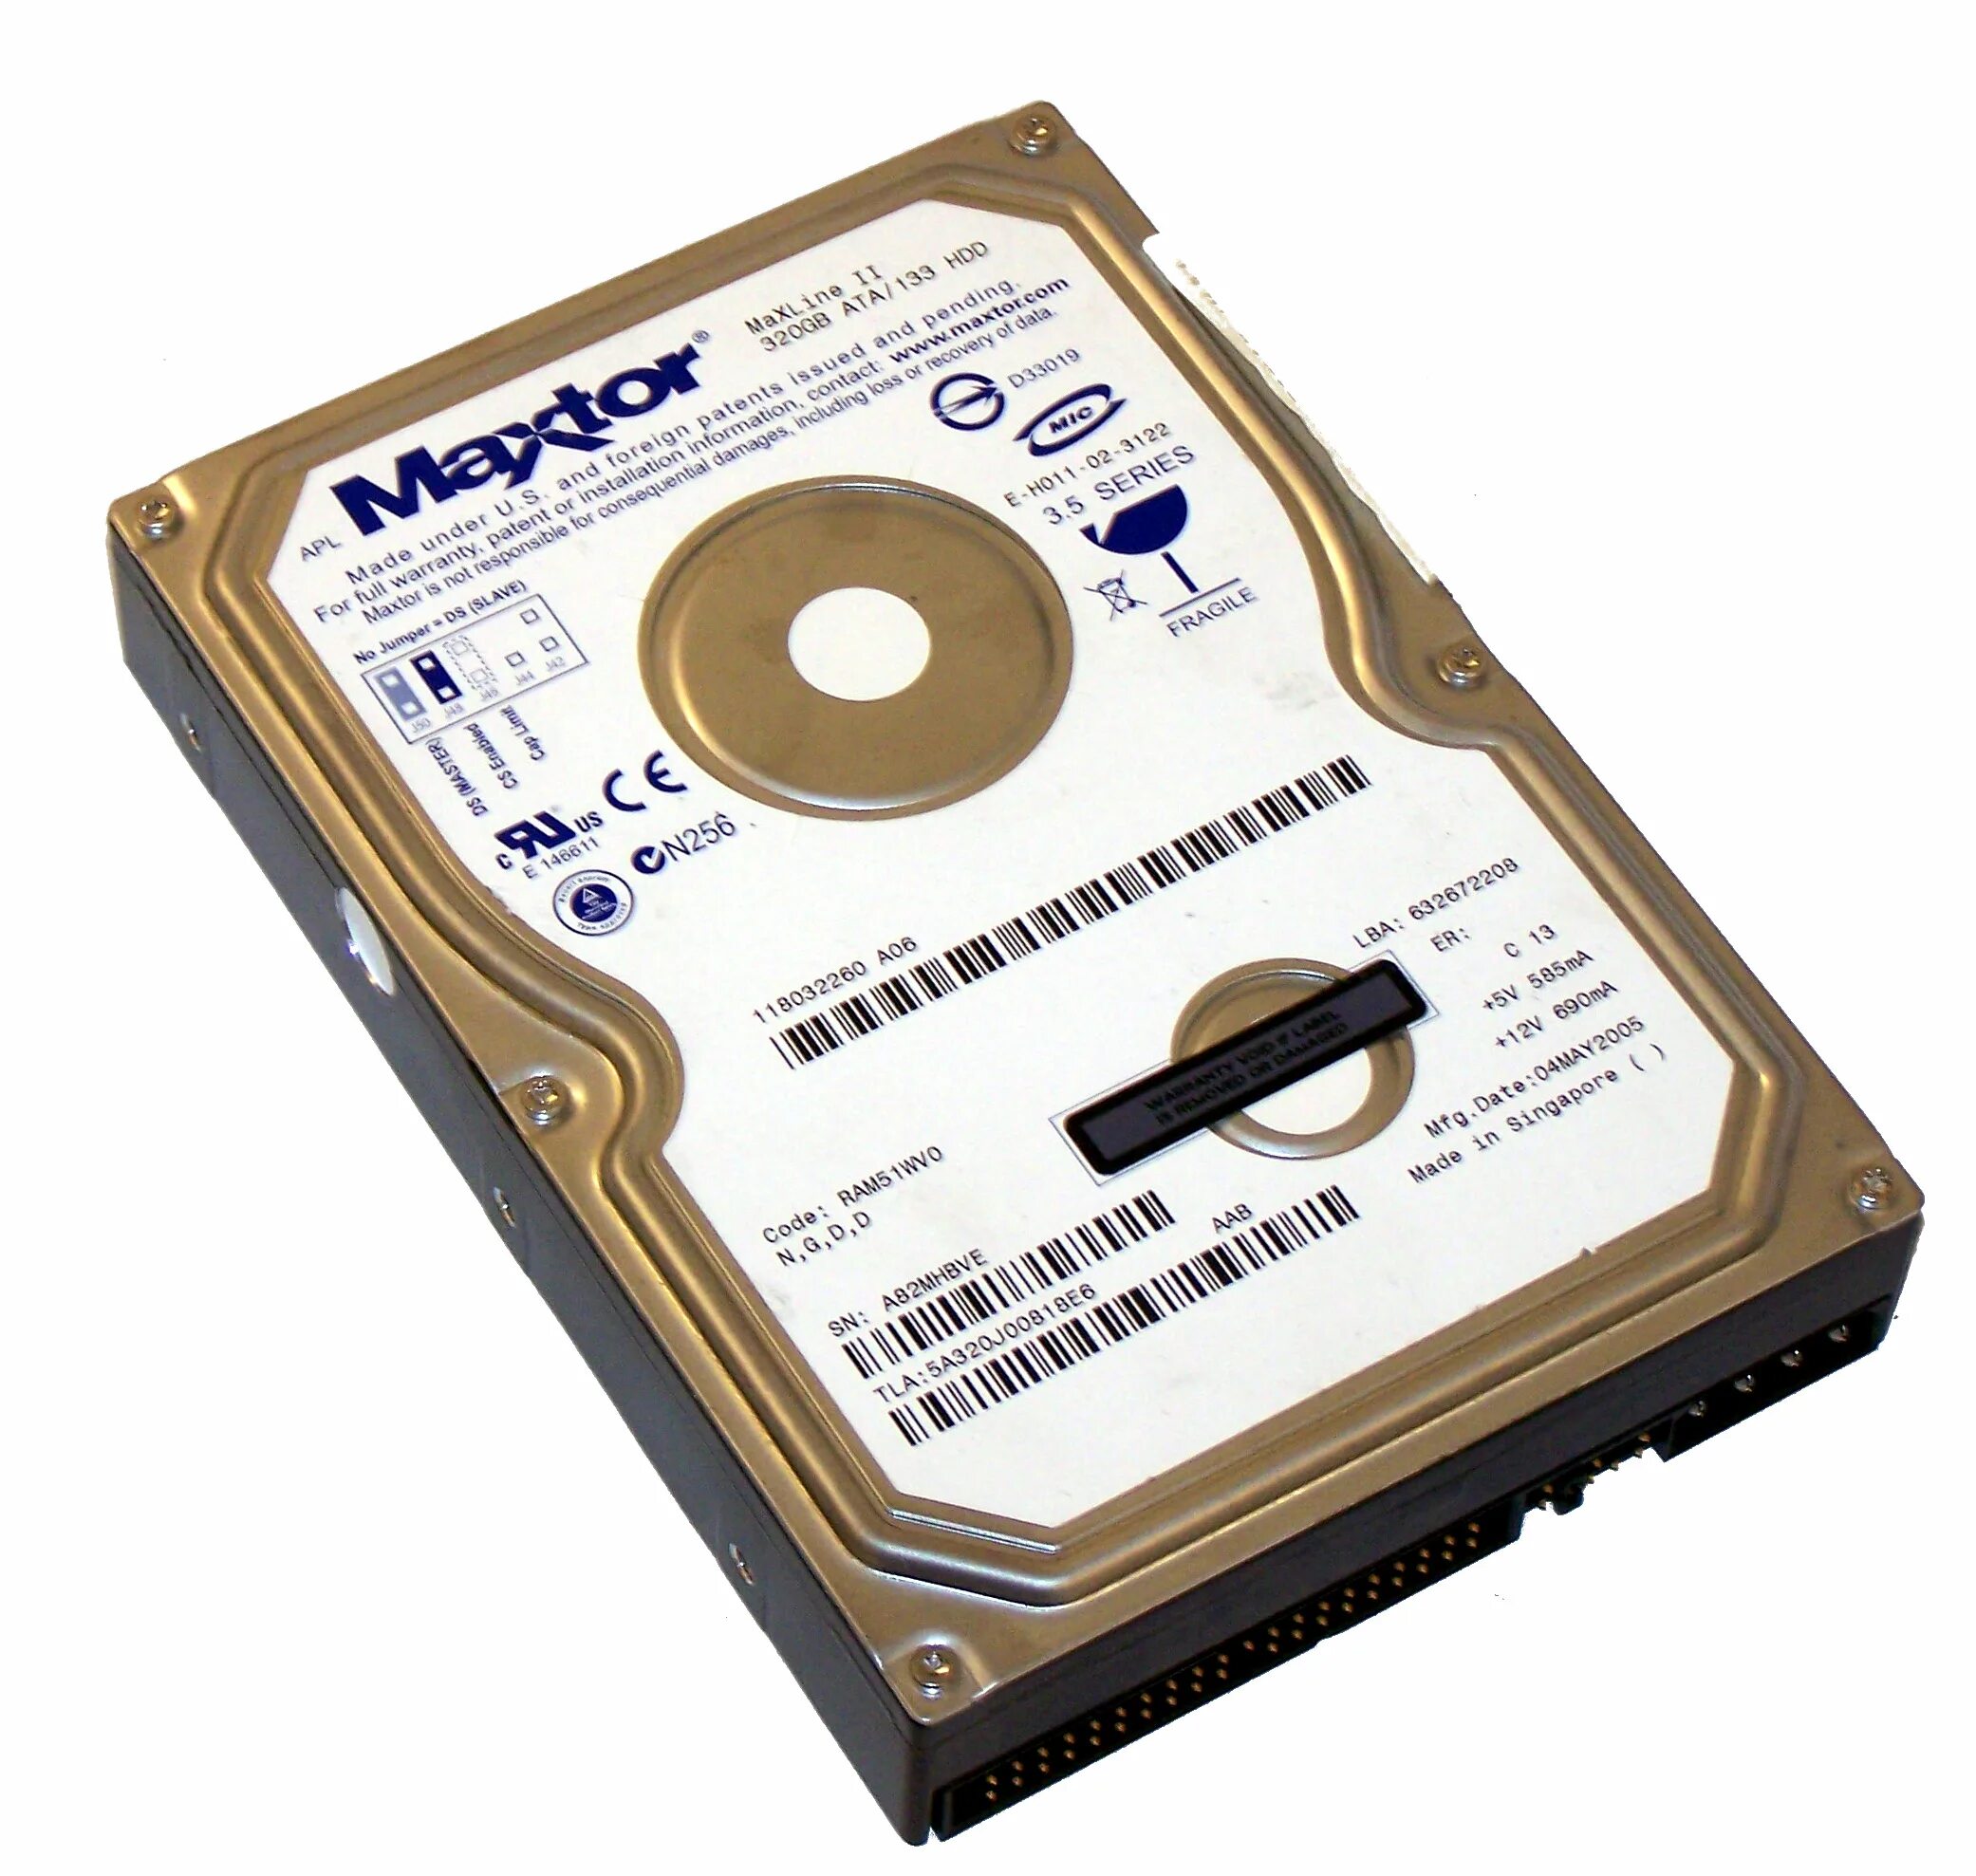 Жёсткий диск Maxtor 40 ГБ 3.5 Series. Maxtor 320 GB. Внешний жесткий диск Maxtor. Maxtor HDD logo. Ram 51